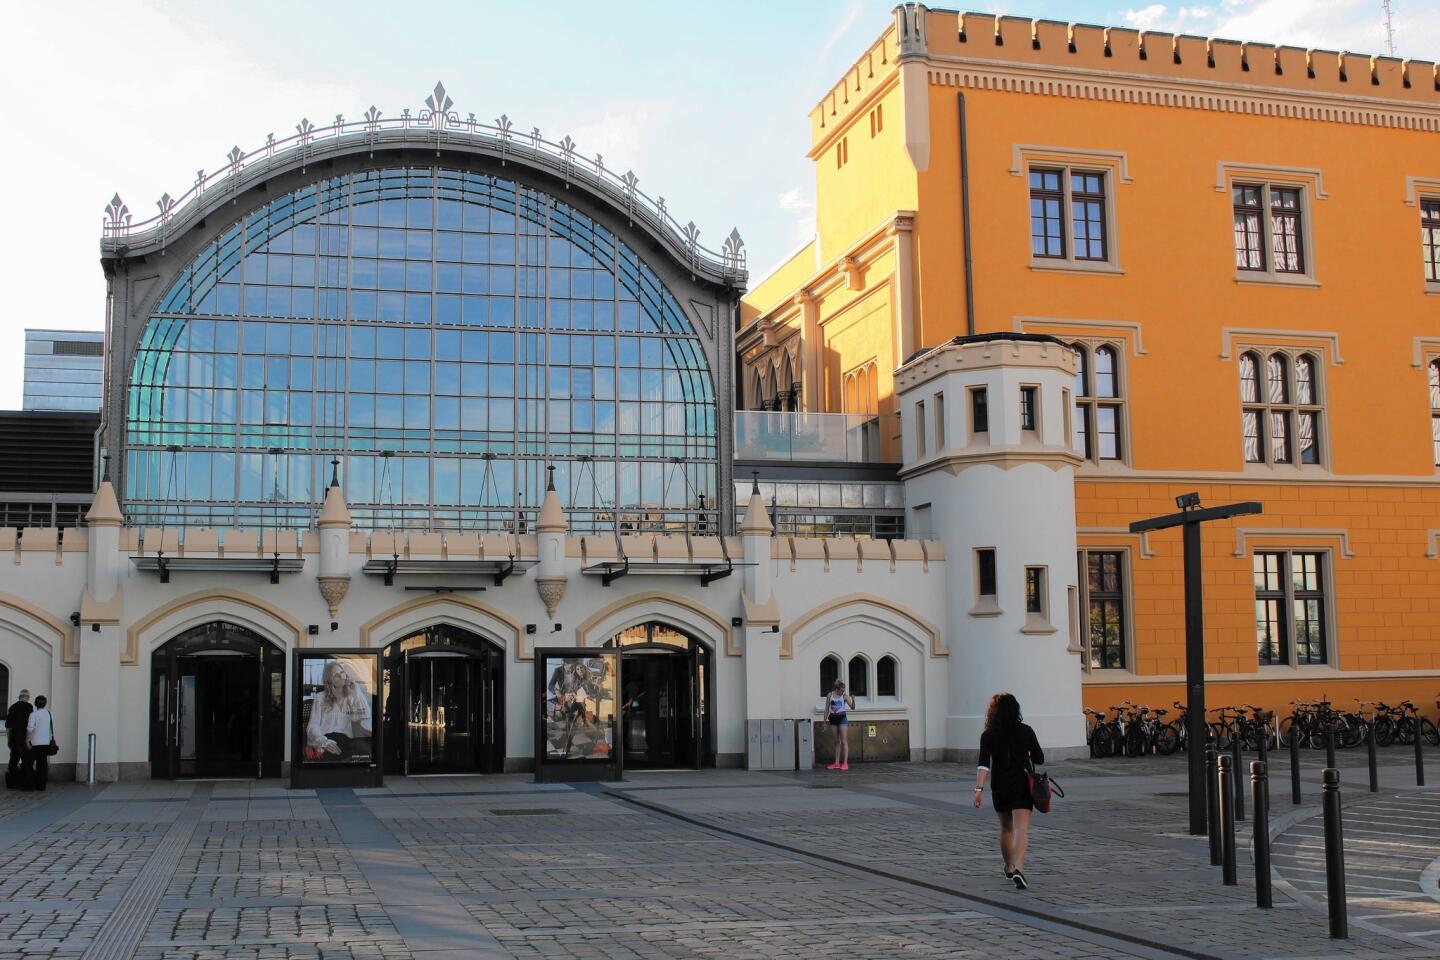 Wroclaw station